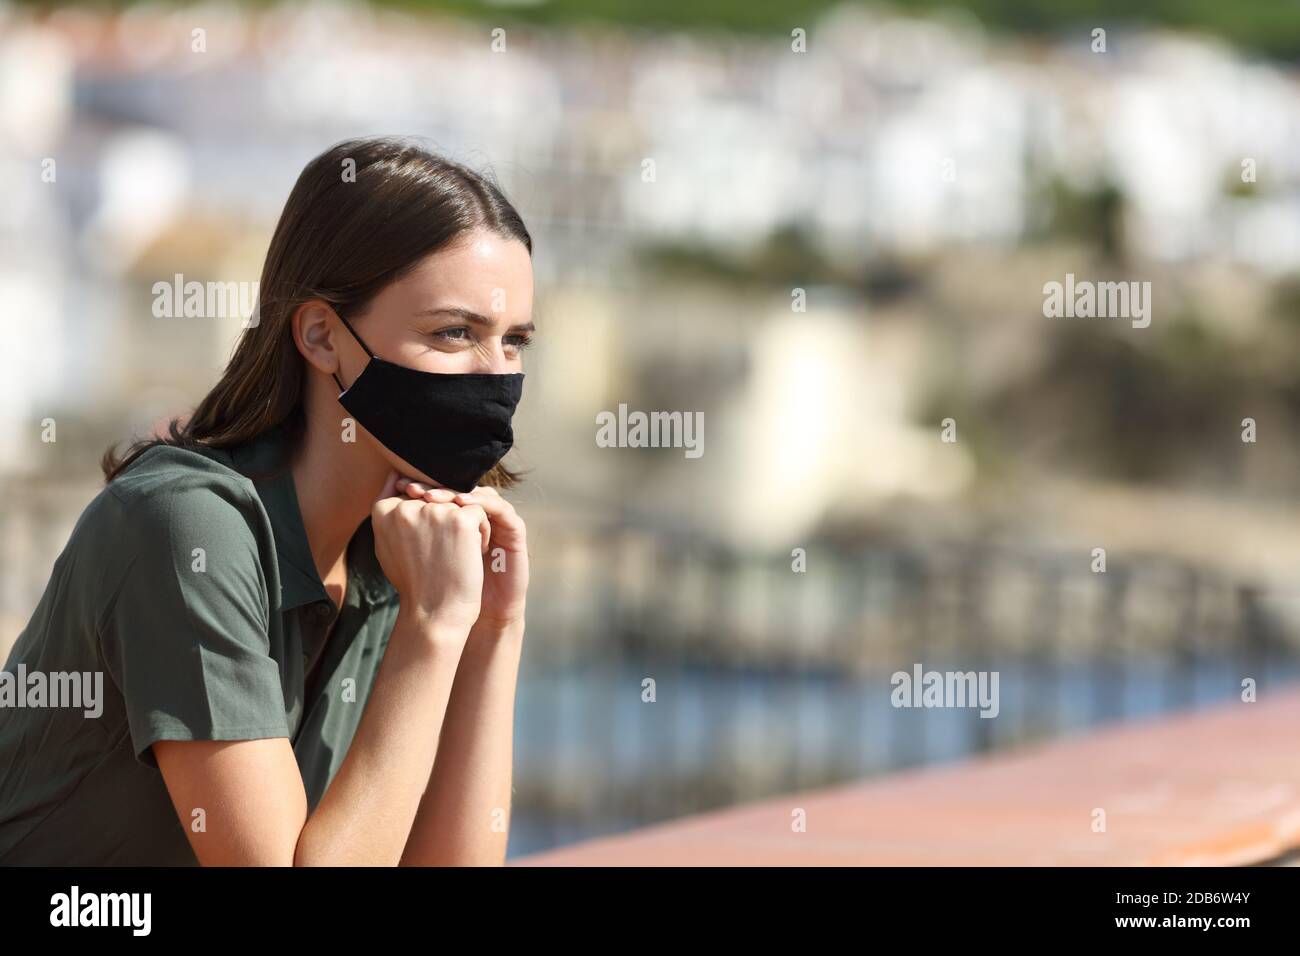 Femme heureuse portant un masque évitant la contagion du coronavirus en contemplant des vues vacances depuis un balcon Banque D'Images